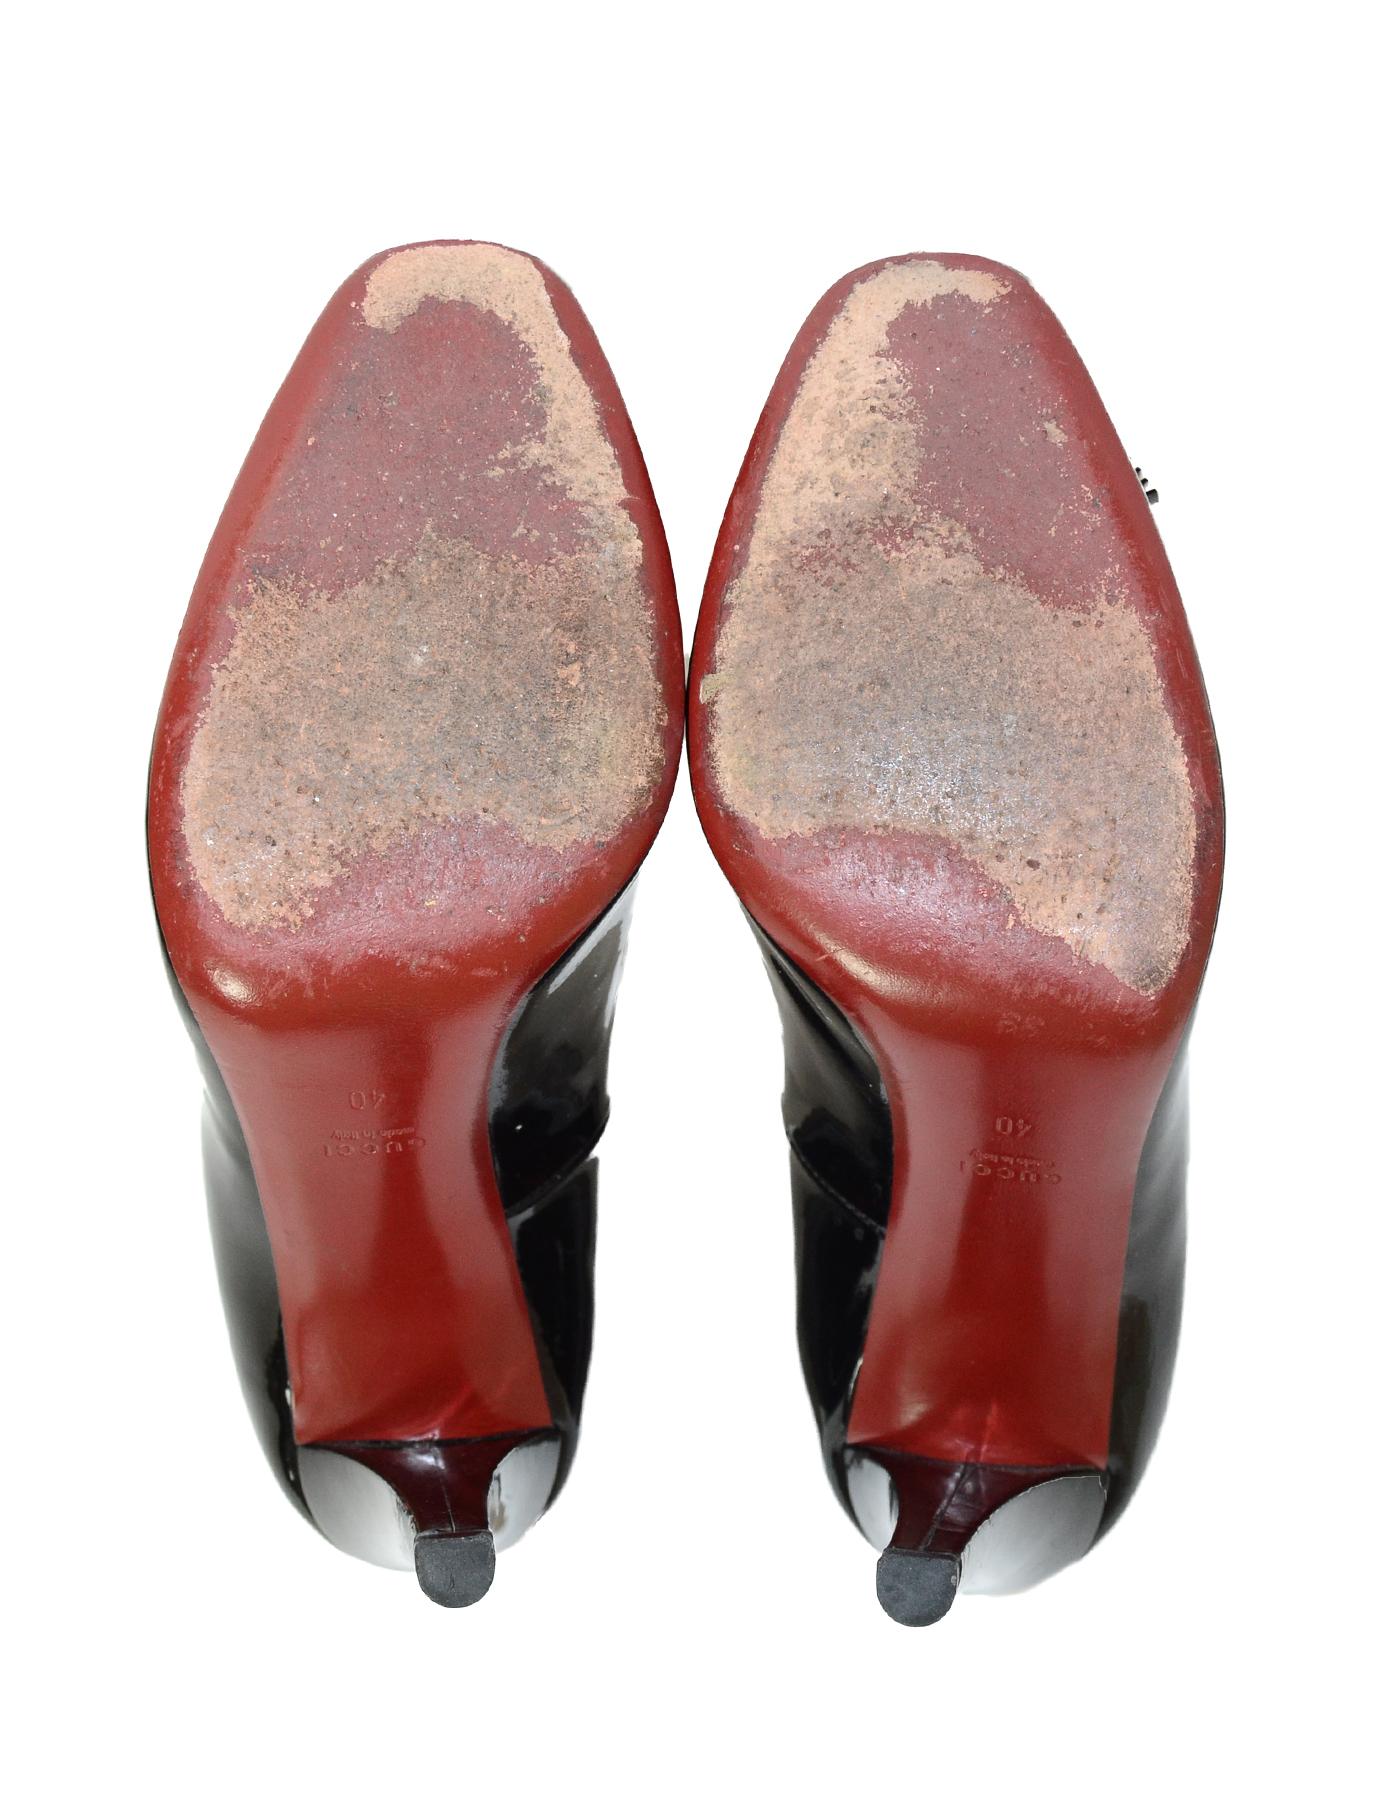 Gucci Black Patent Leather Pumps Heels W/ Tassel Sz 40 2